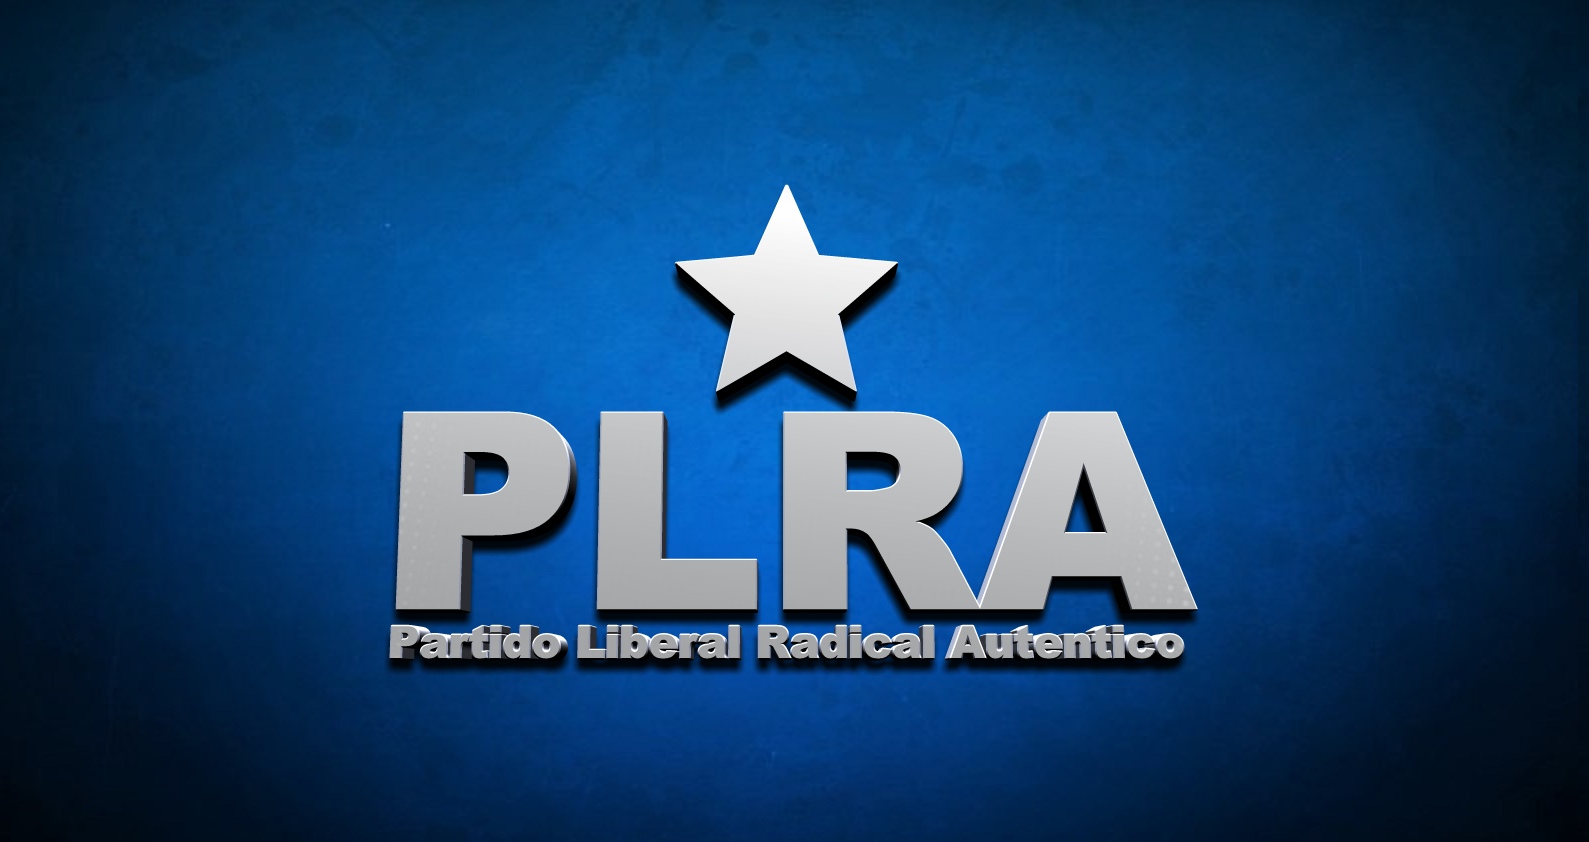 PLRA - PARTIDO LIBERAL